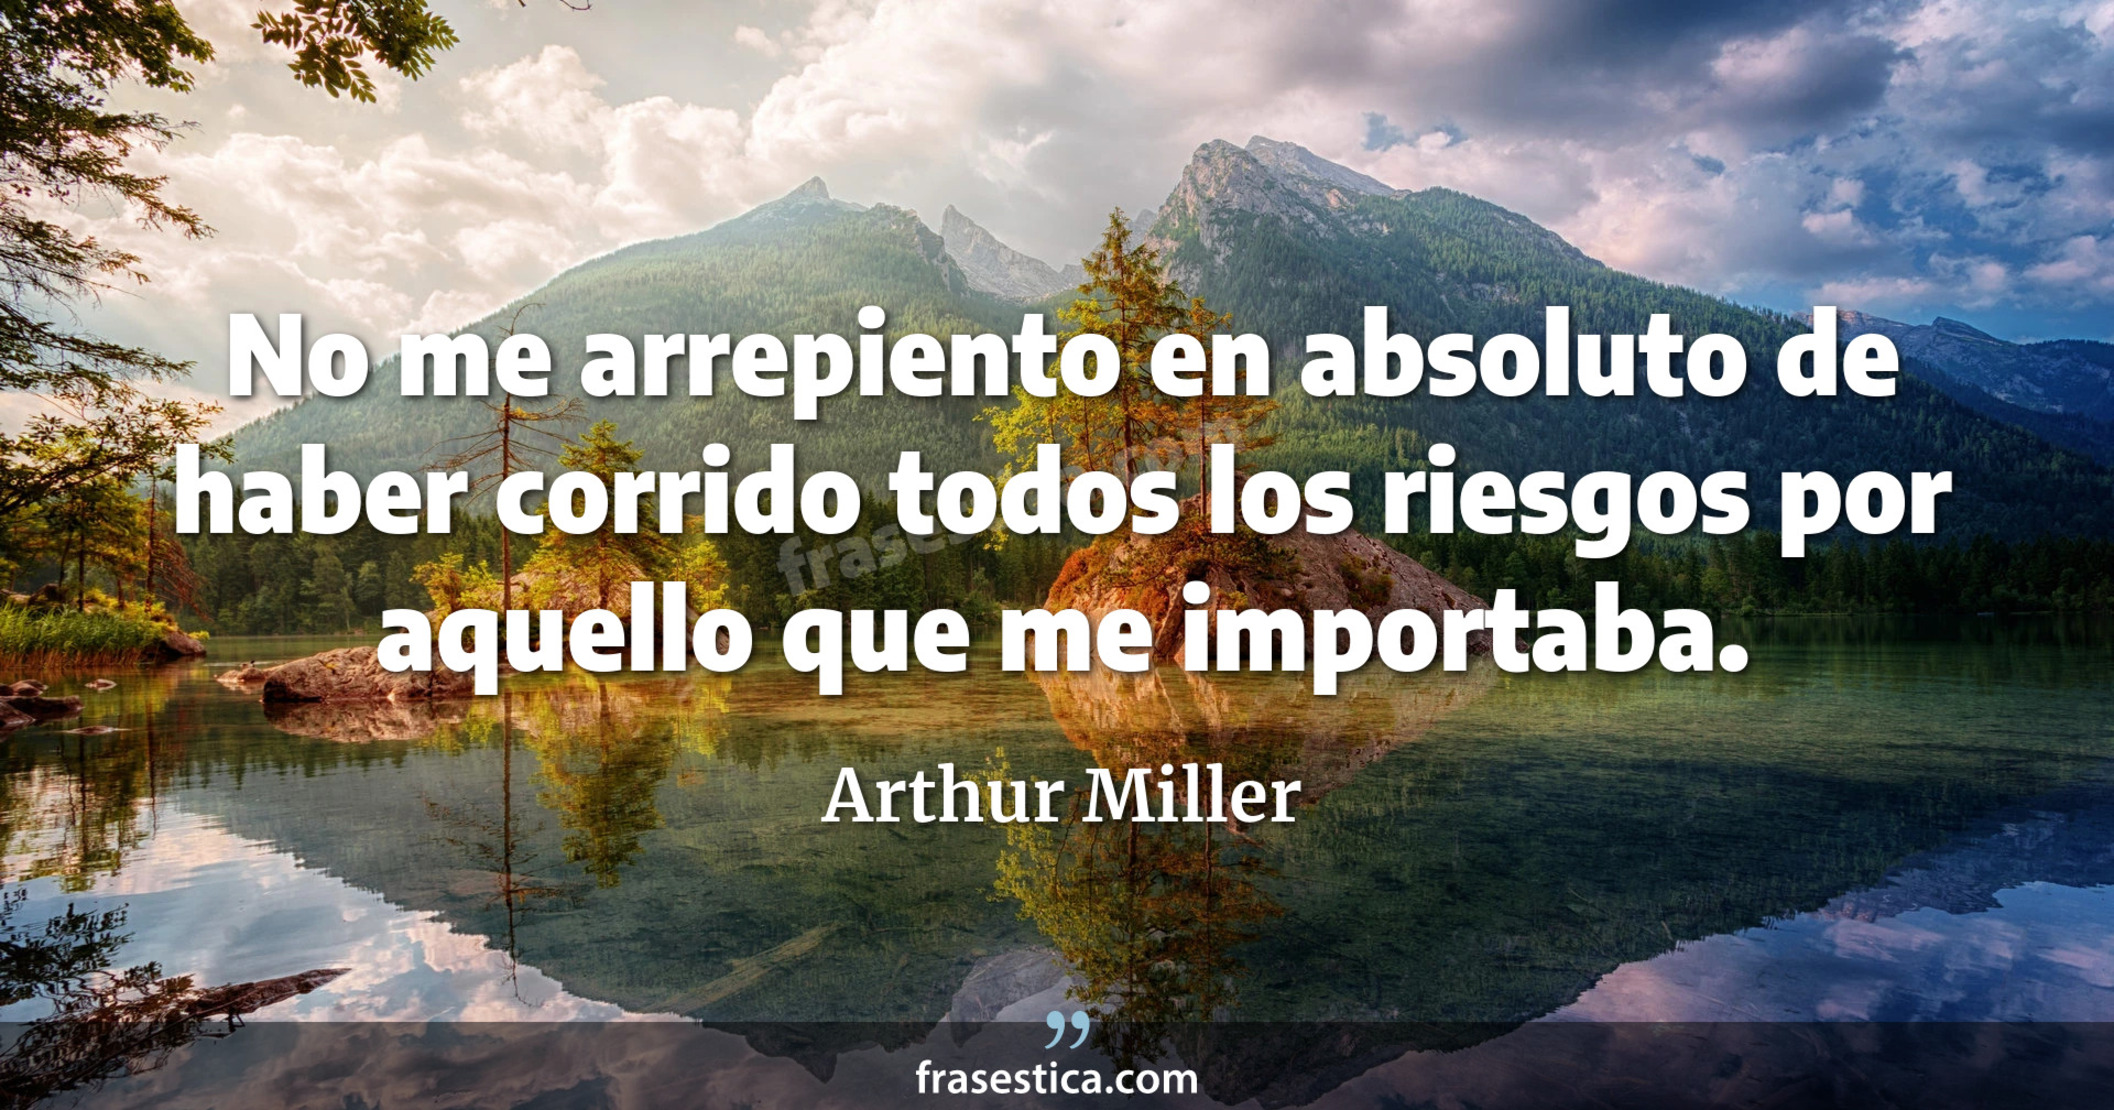 No me arrepiento en absoluto de haber corrido todos los riesgos por aquello que me importaba. - Arthur Miller